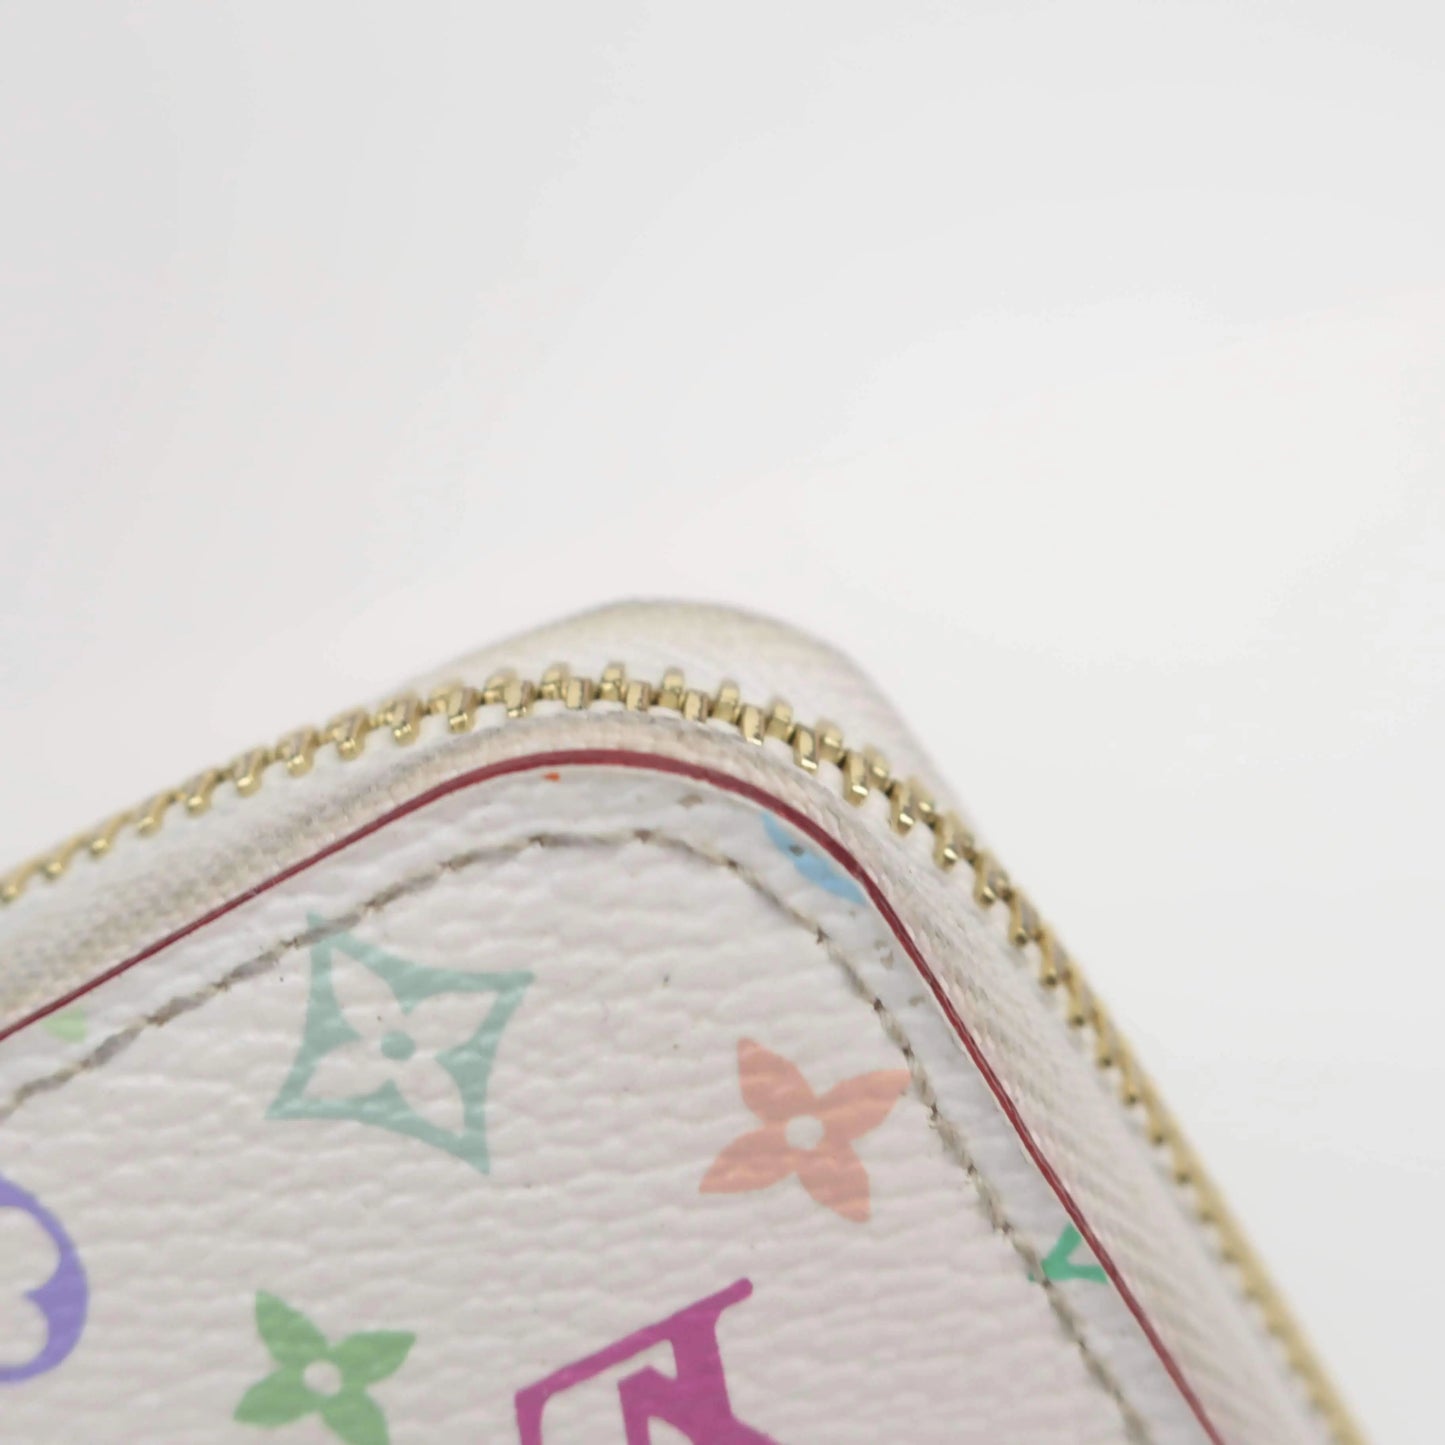 Louis Vuitton White Monogram Multicolor Zippy Wallet 862574 at